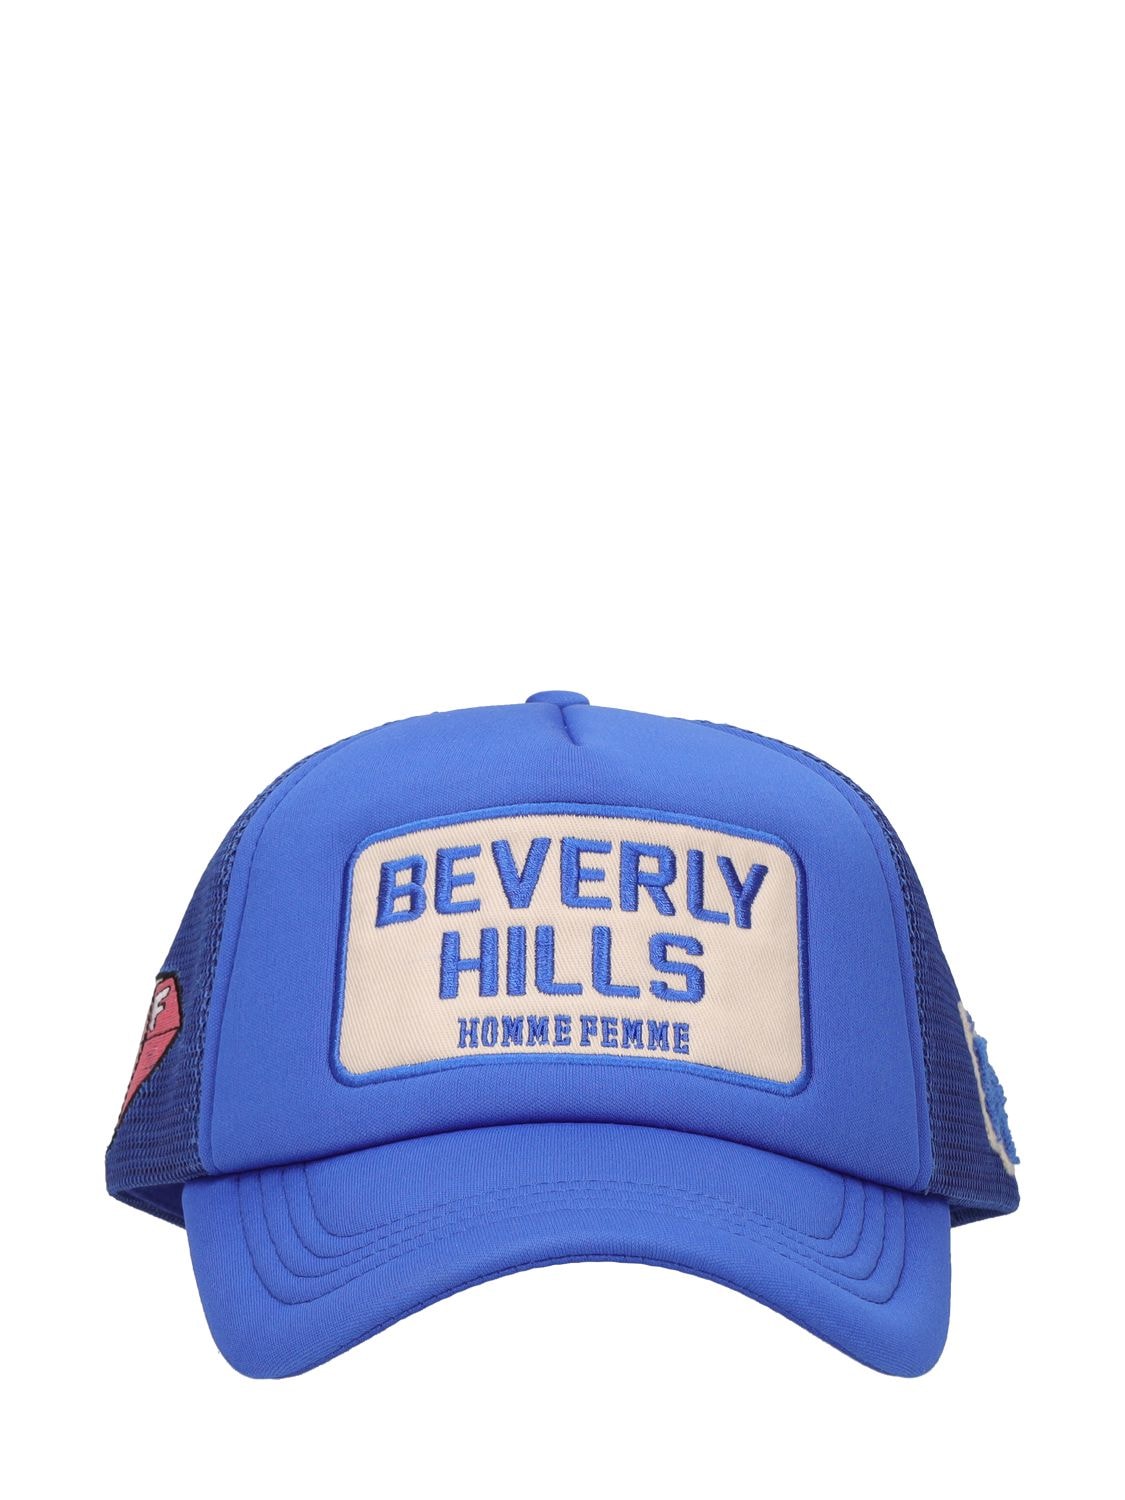 Homme + Femme La Beverly Hills Trucker Hat In Blue,multi